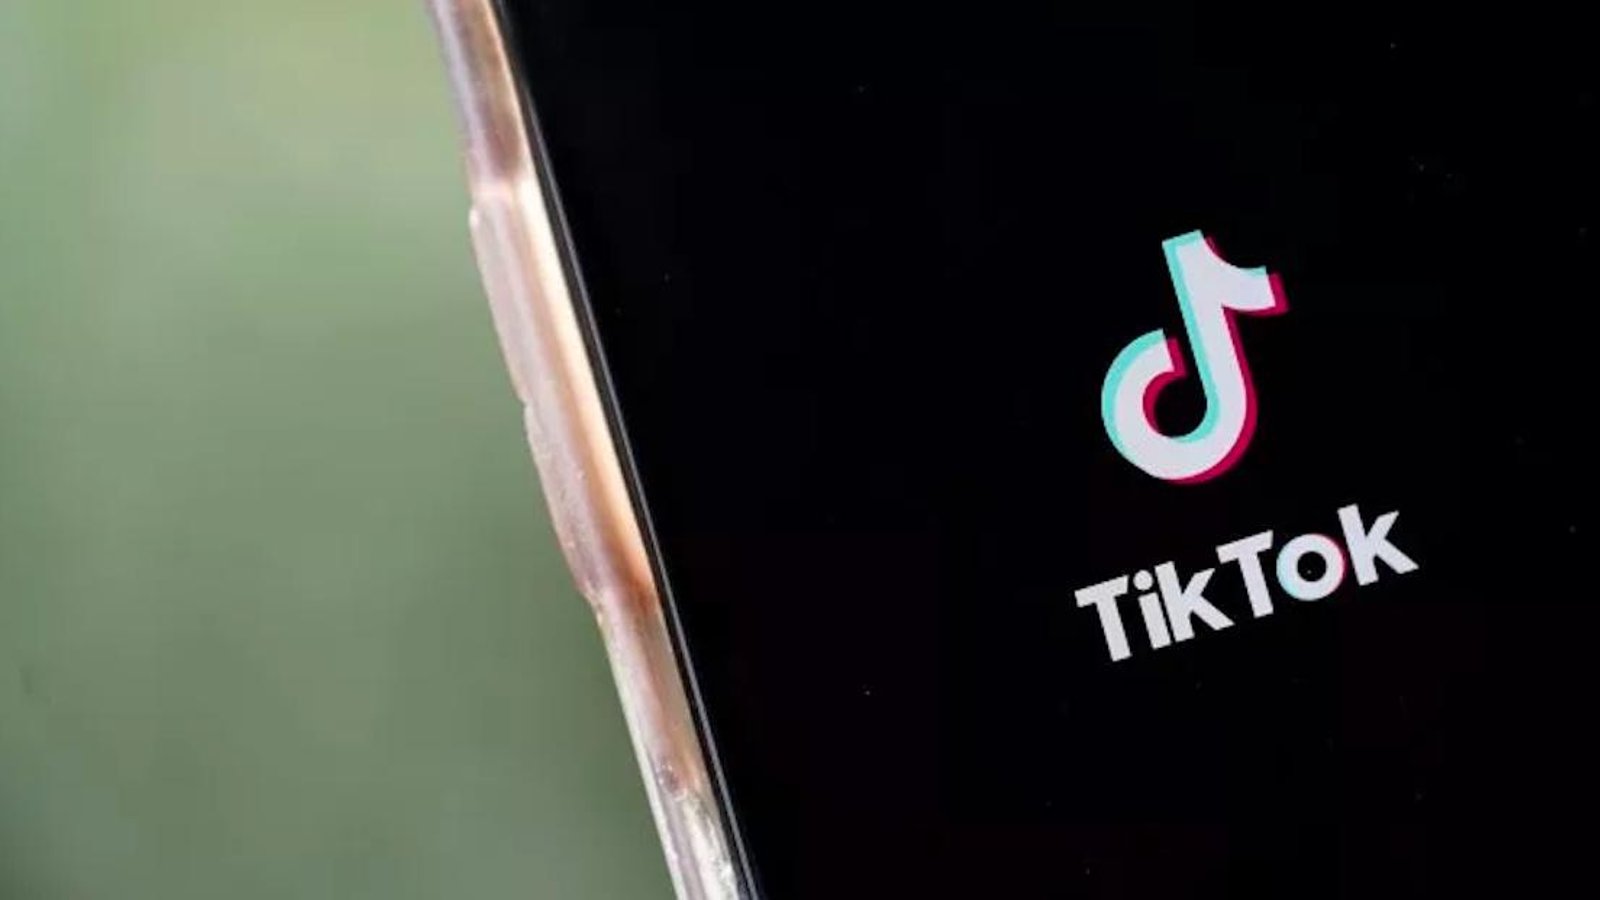 Sur TikTok, des gens évoquent la possibilité d'un chalenge ignoble susceptible d'avoir lieu le 24 avril prochain